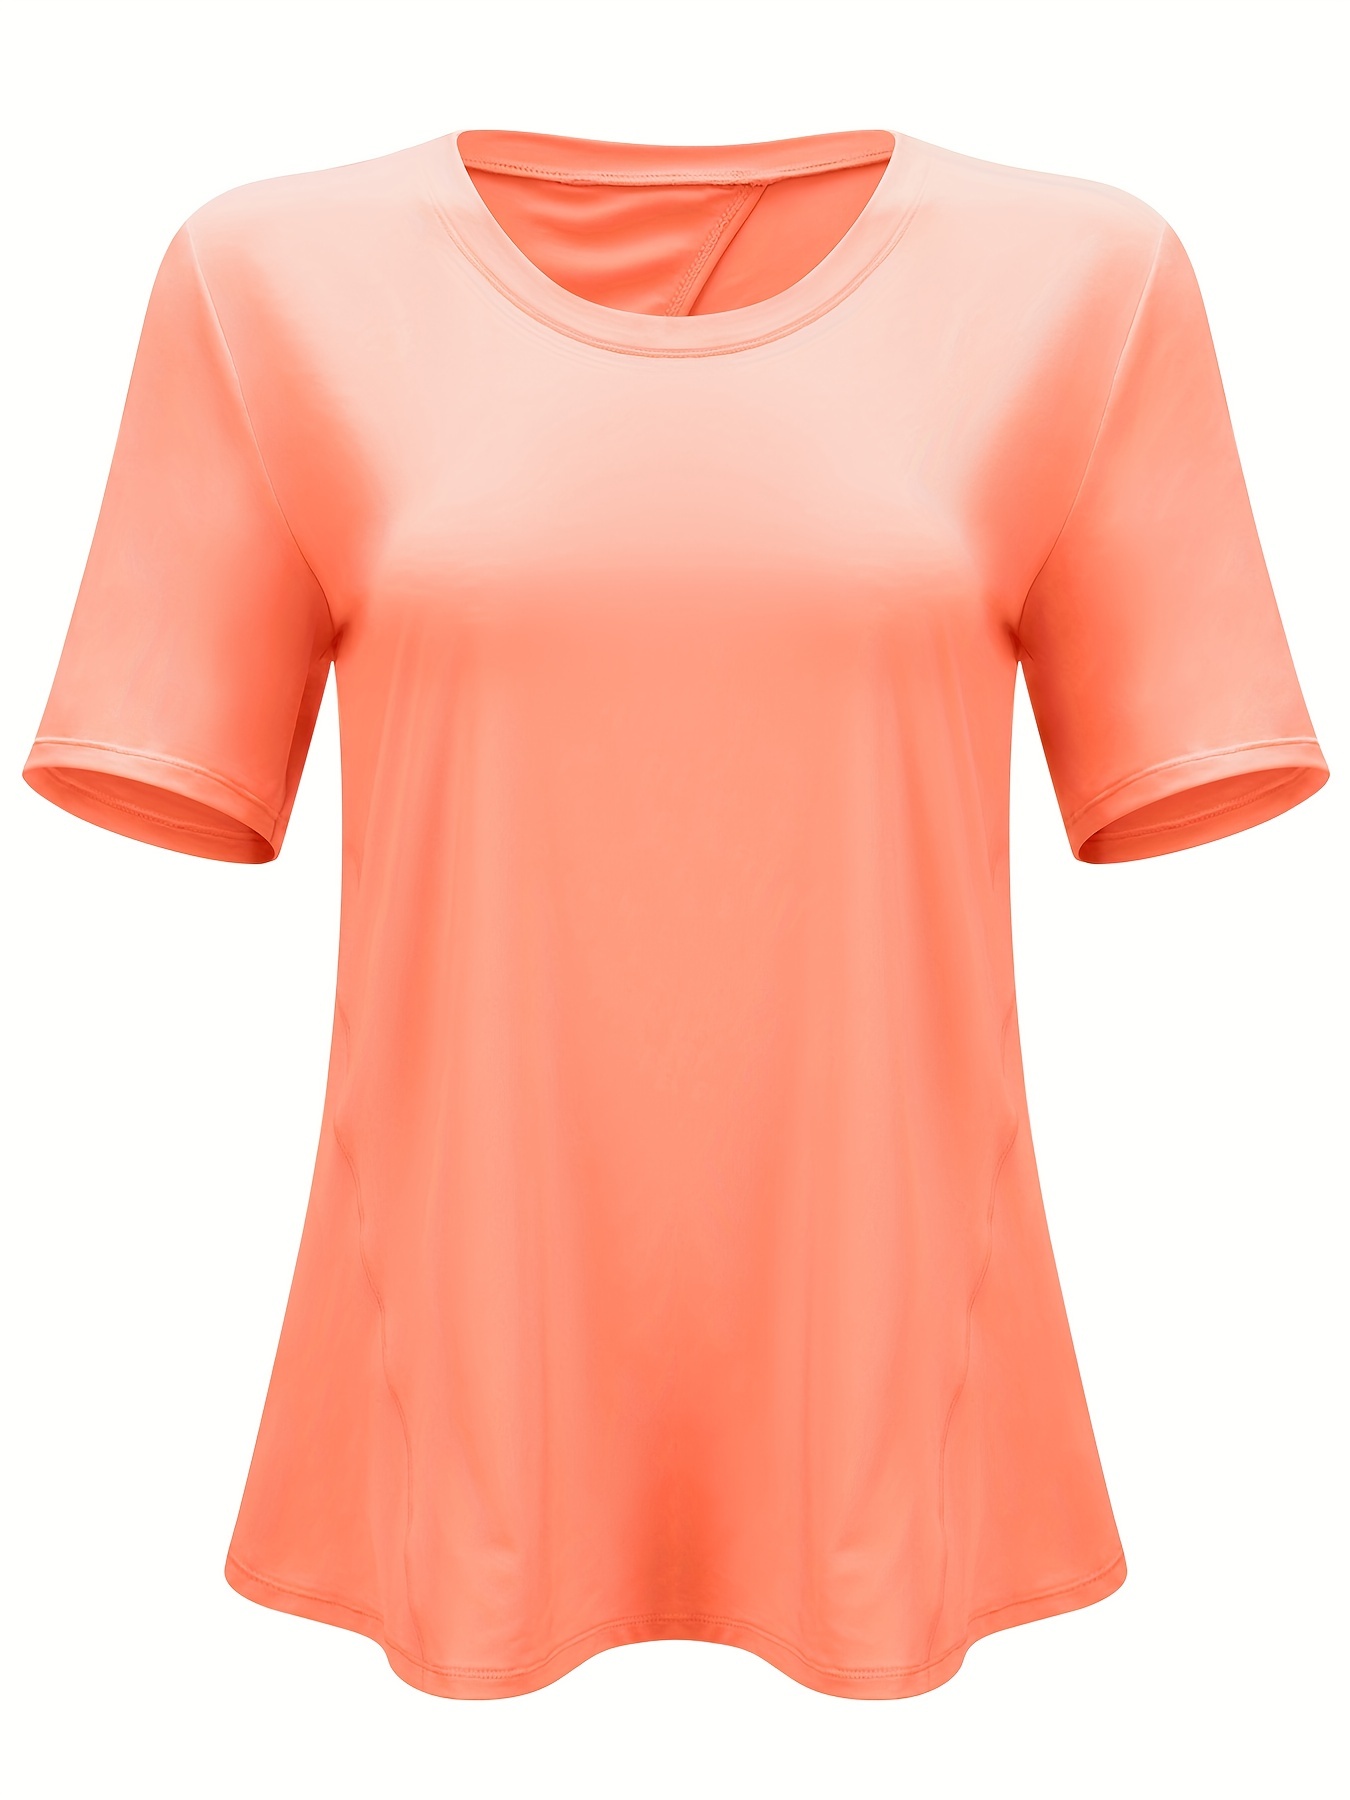 Camisetas Deportivas Cuello Redondo  Compra Online Camisetas Deportivas  Cuello Redondo en Punto Blanco®